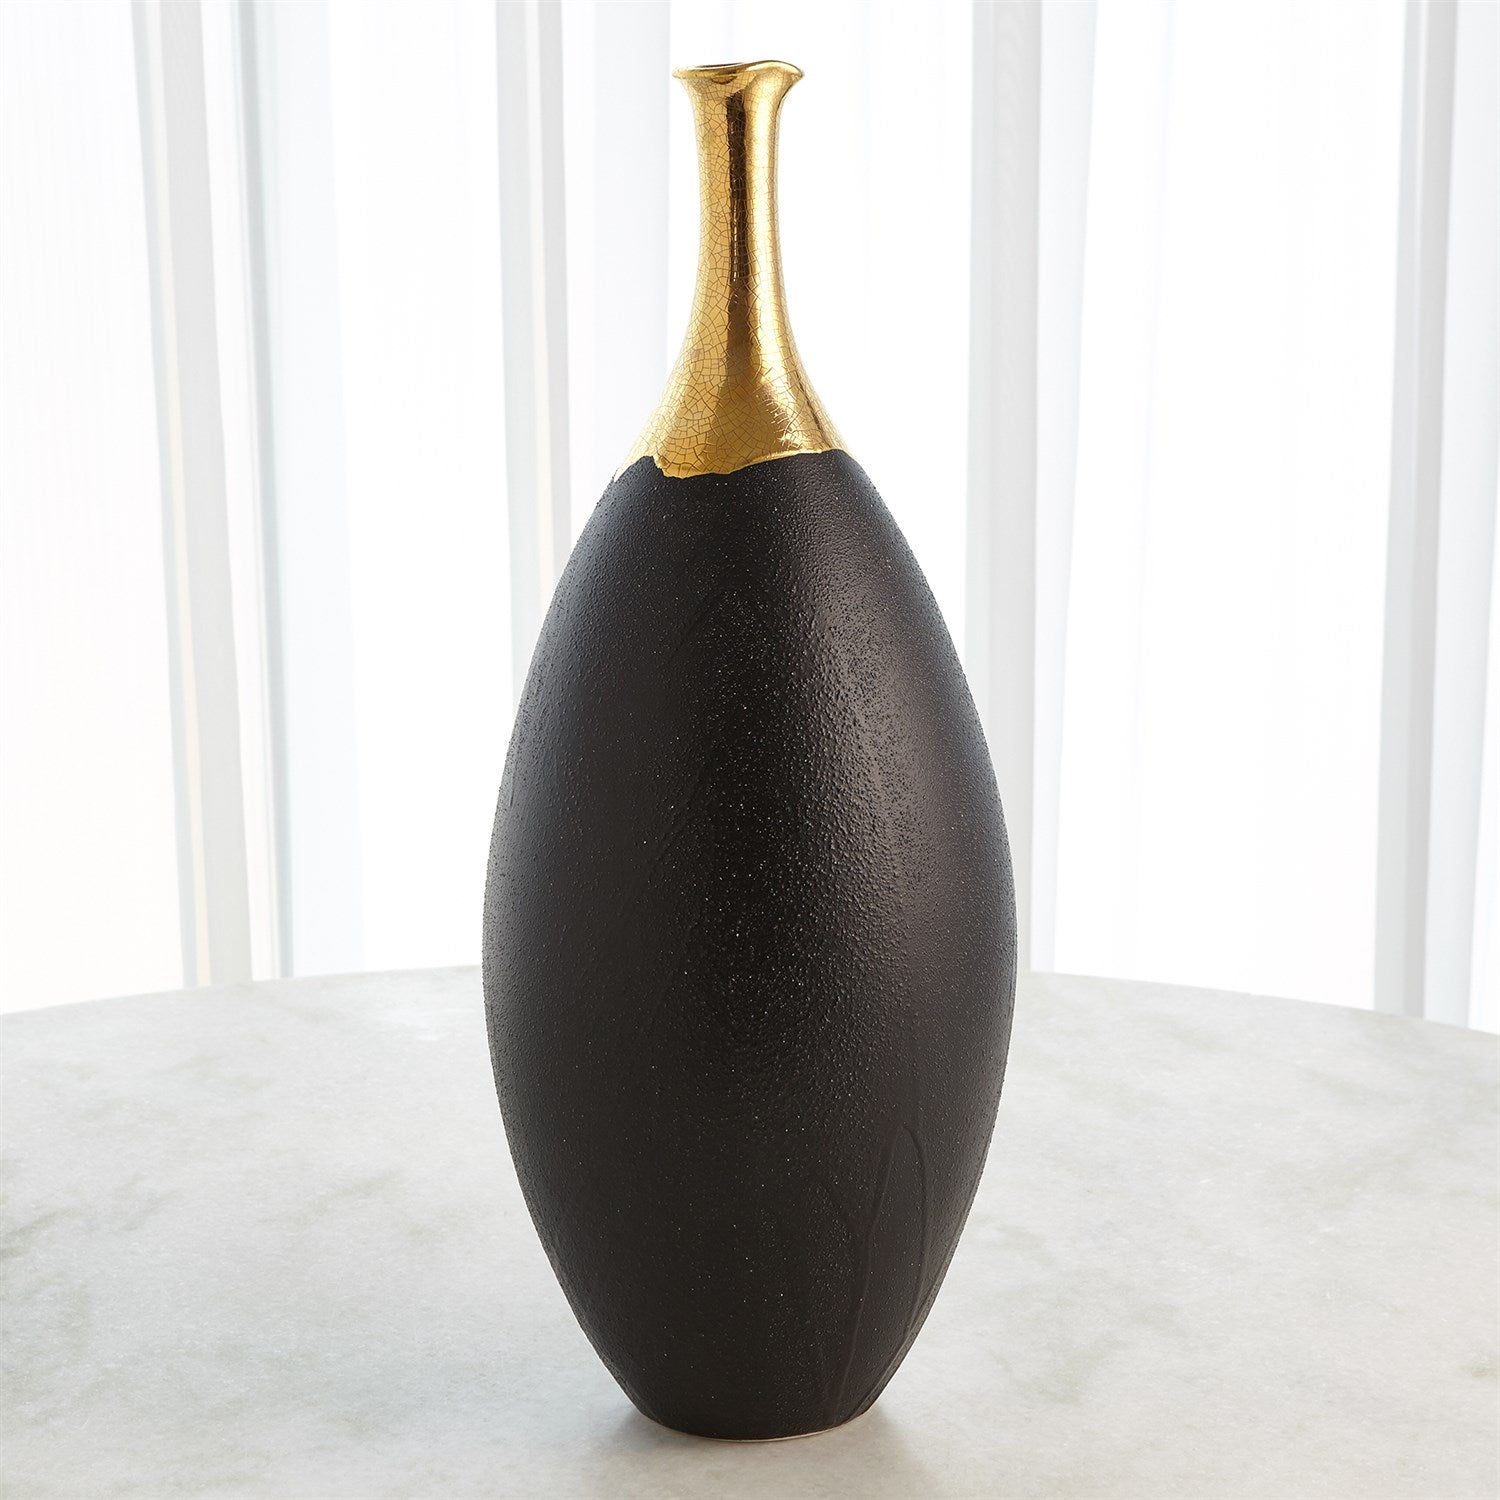 Dipped Golden Crackle/Black Slender Vase